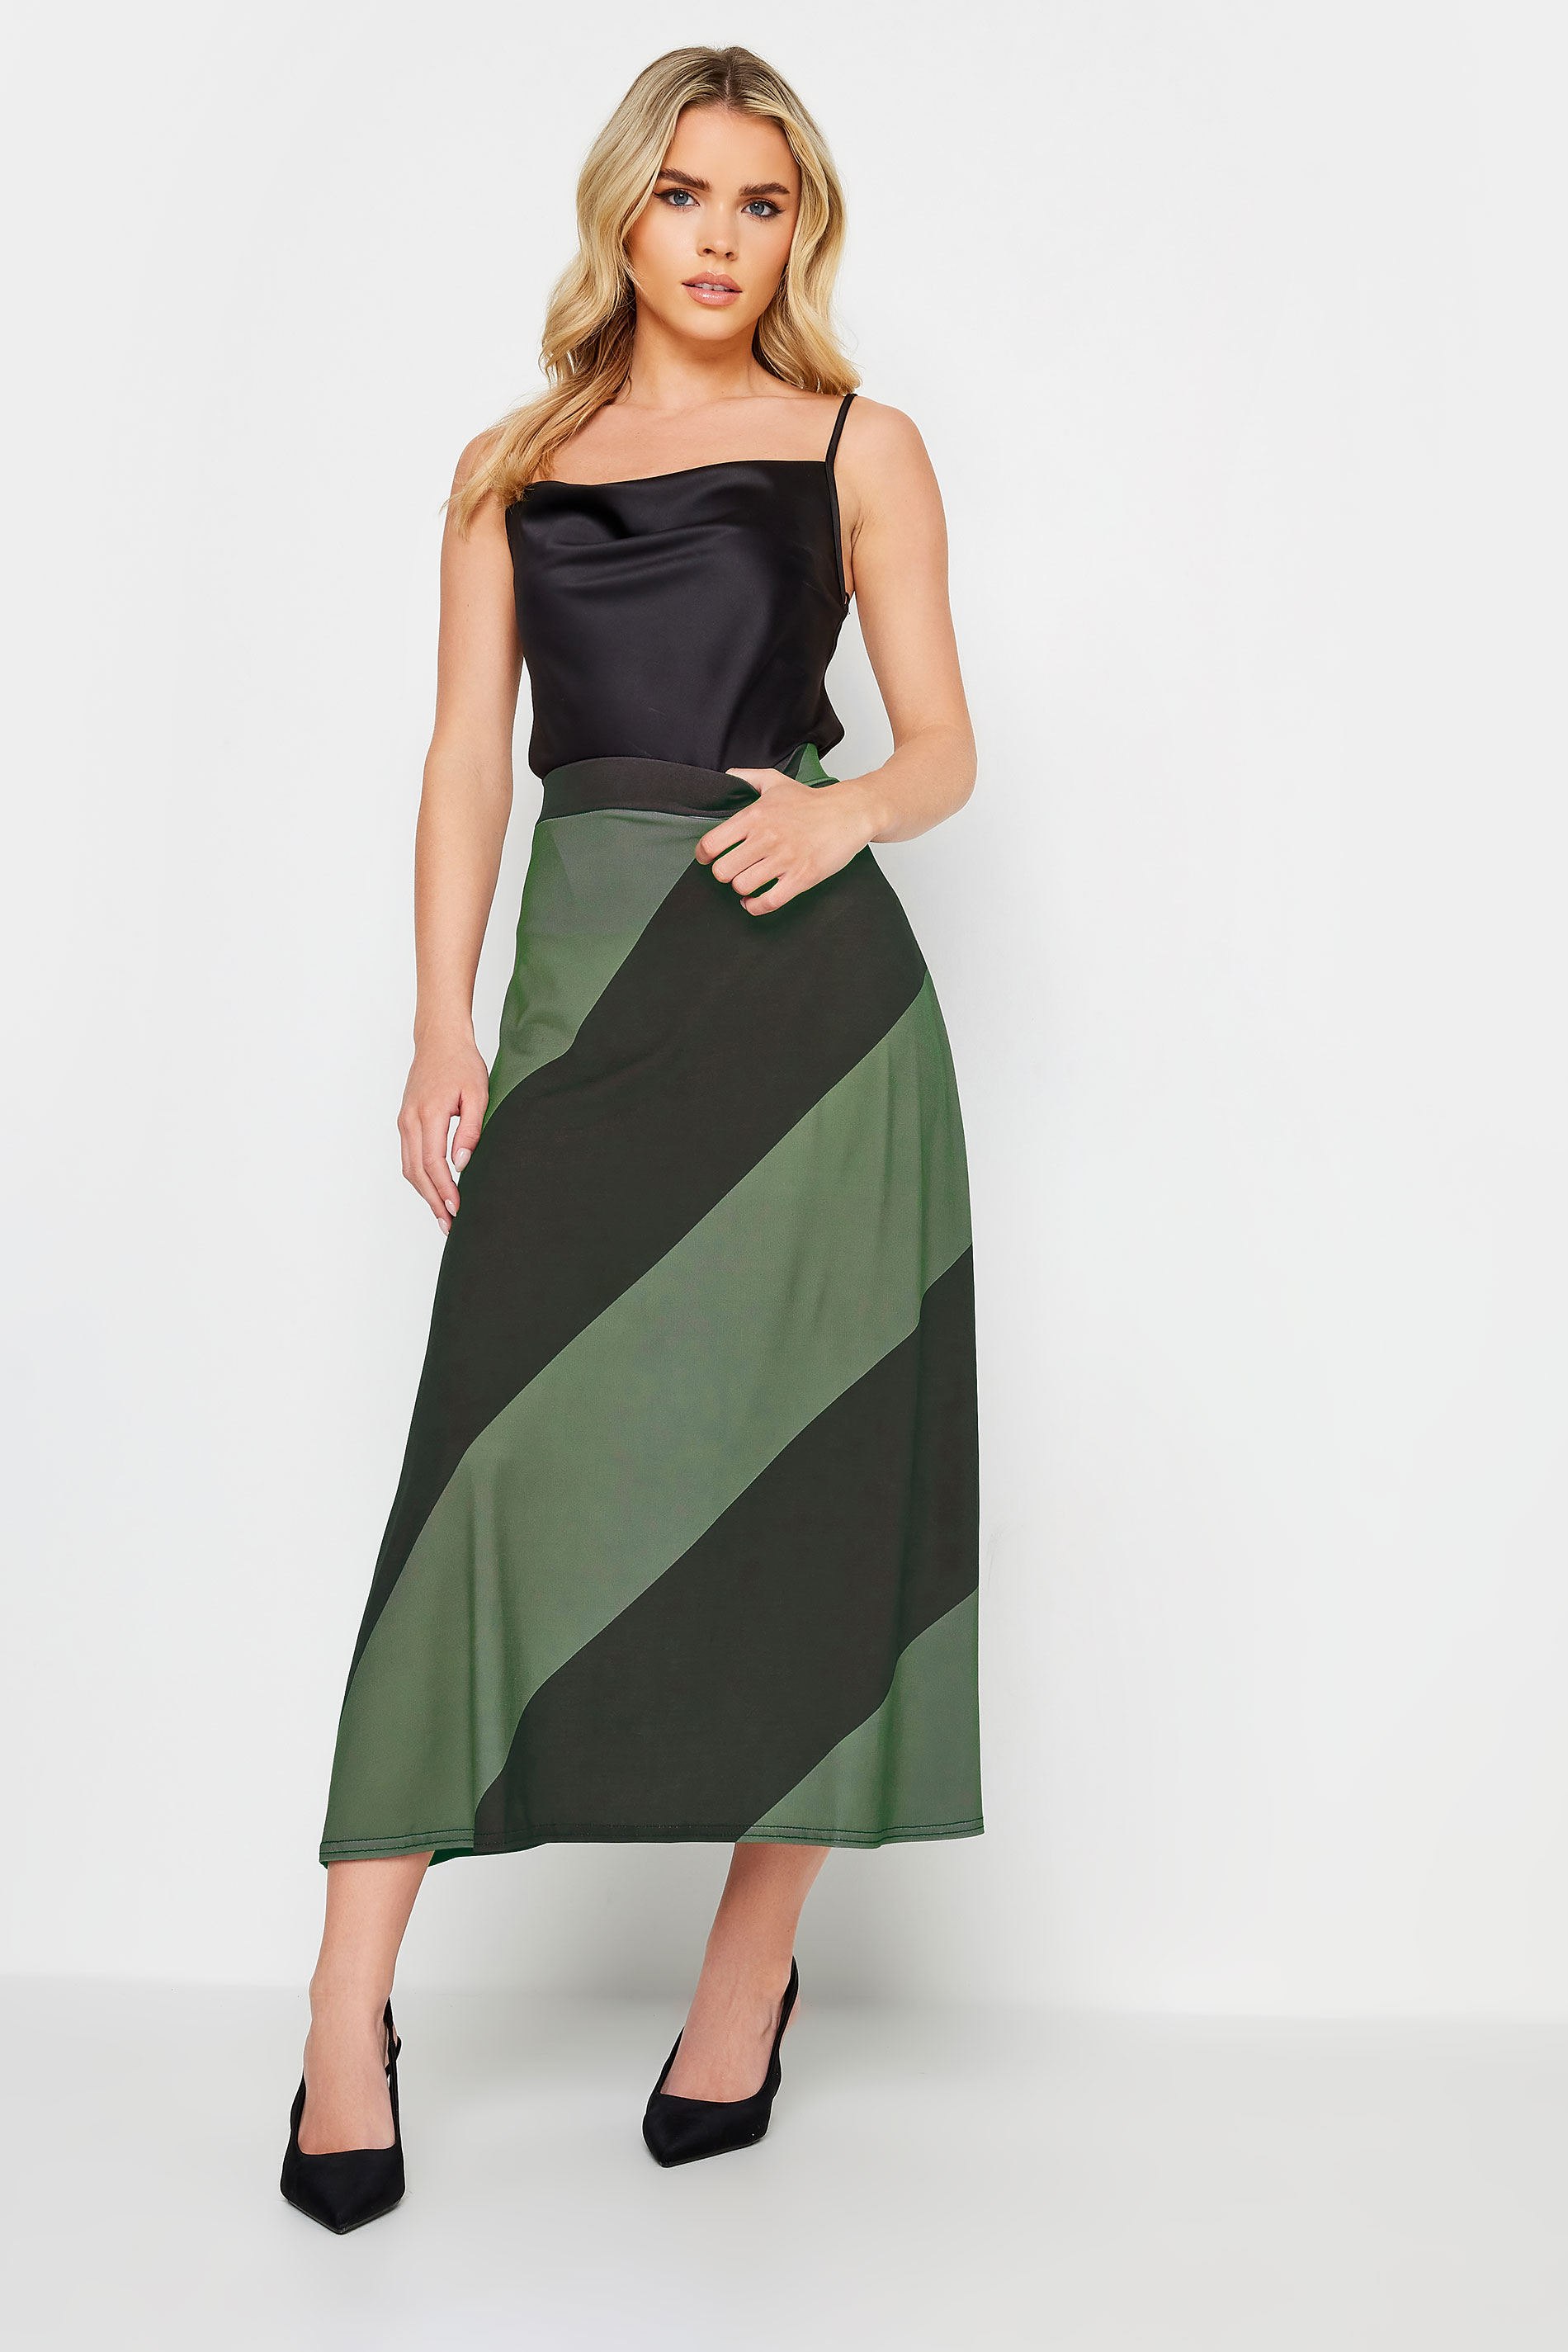 PixieGirl Green Diagonal Stripe Maxi Skirt | PixieGirl 1